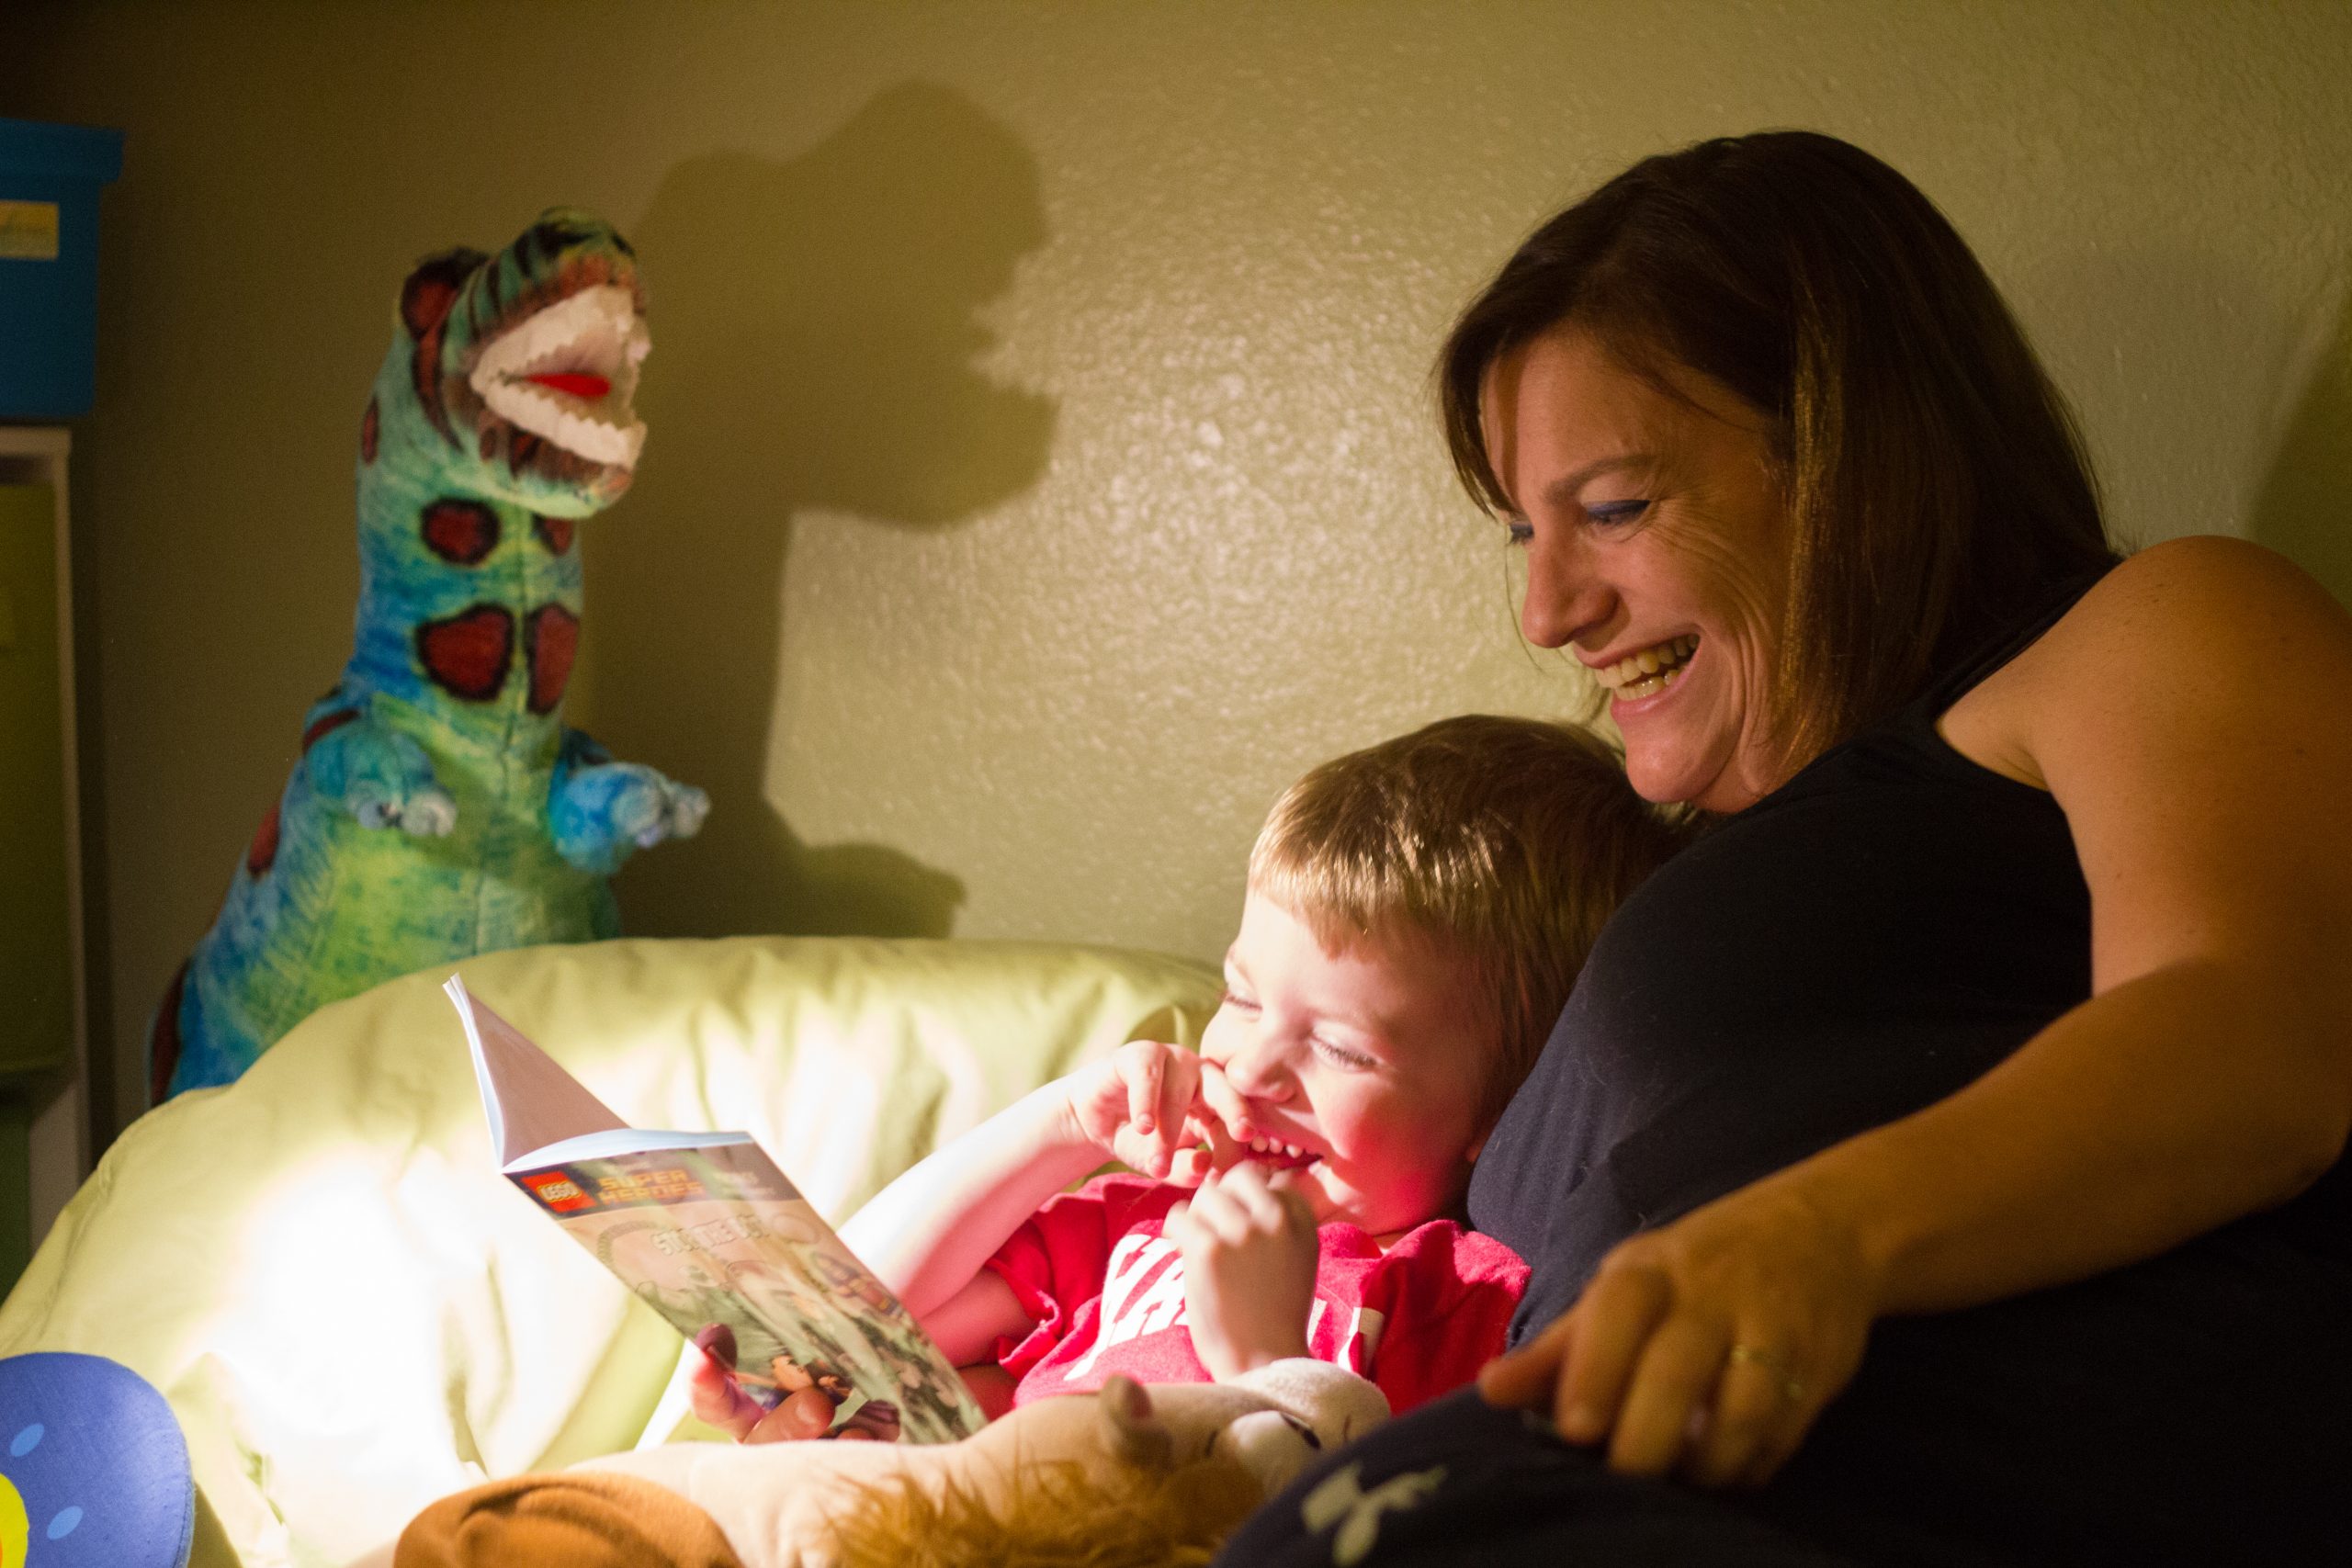 Lire une histoire avant l'heure du coucher : quels impacts sur le